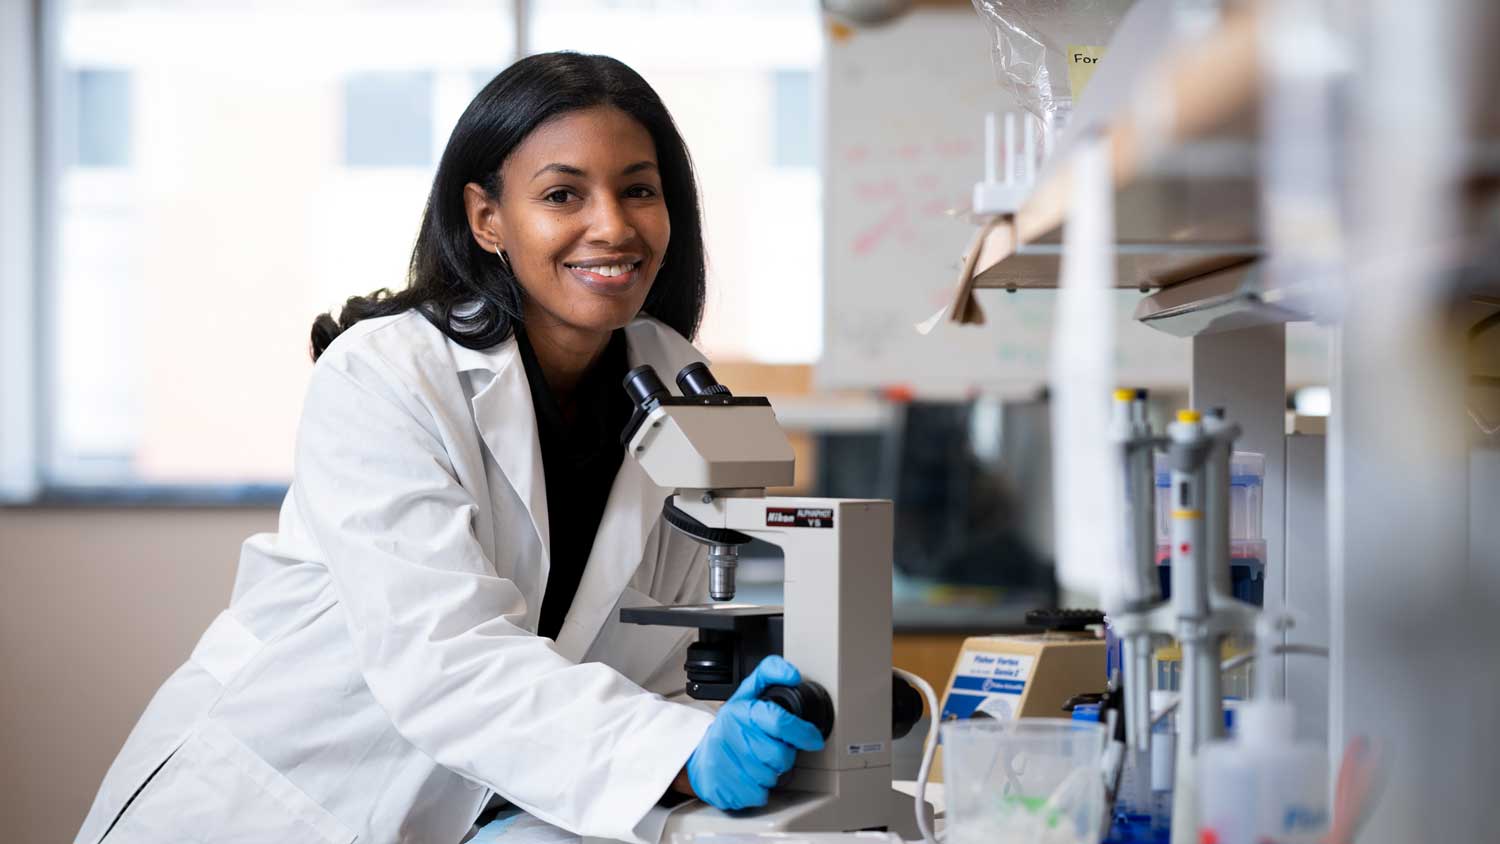 A black female researcher using a microscope in a lab